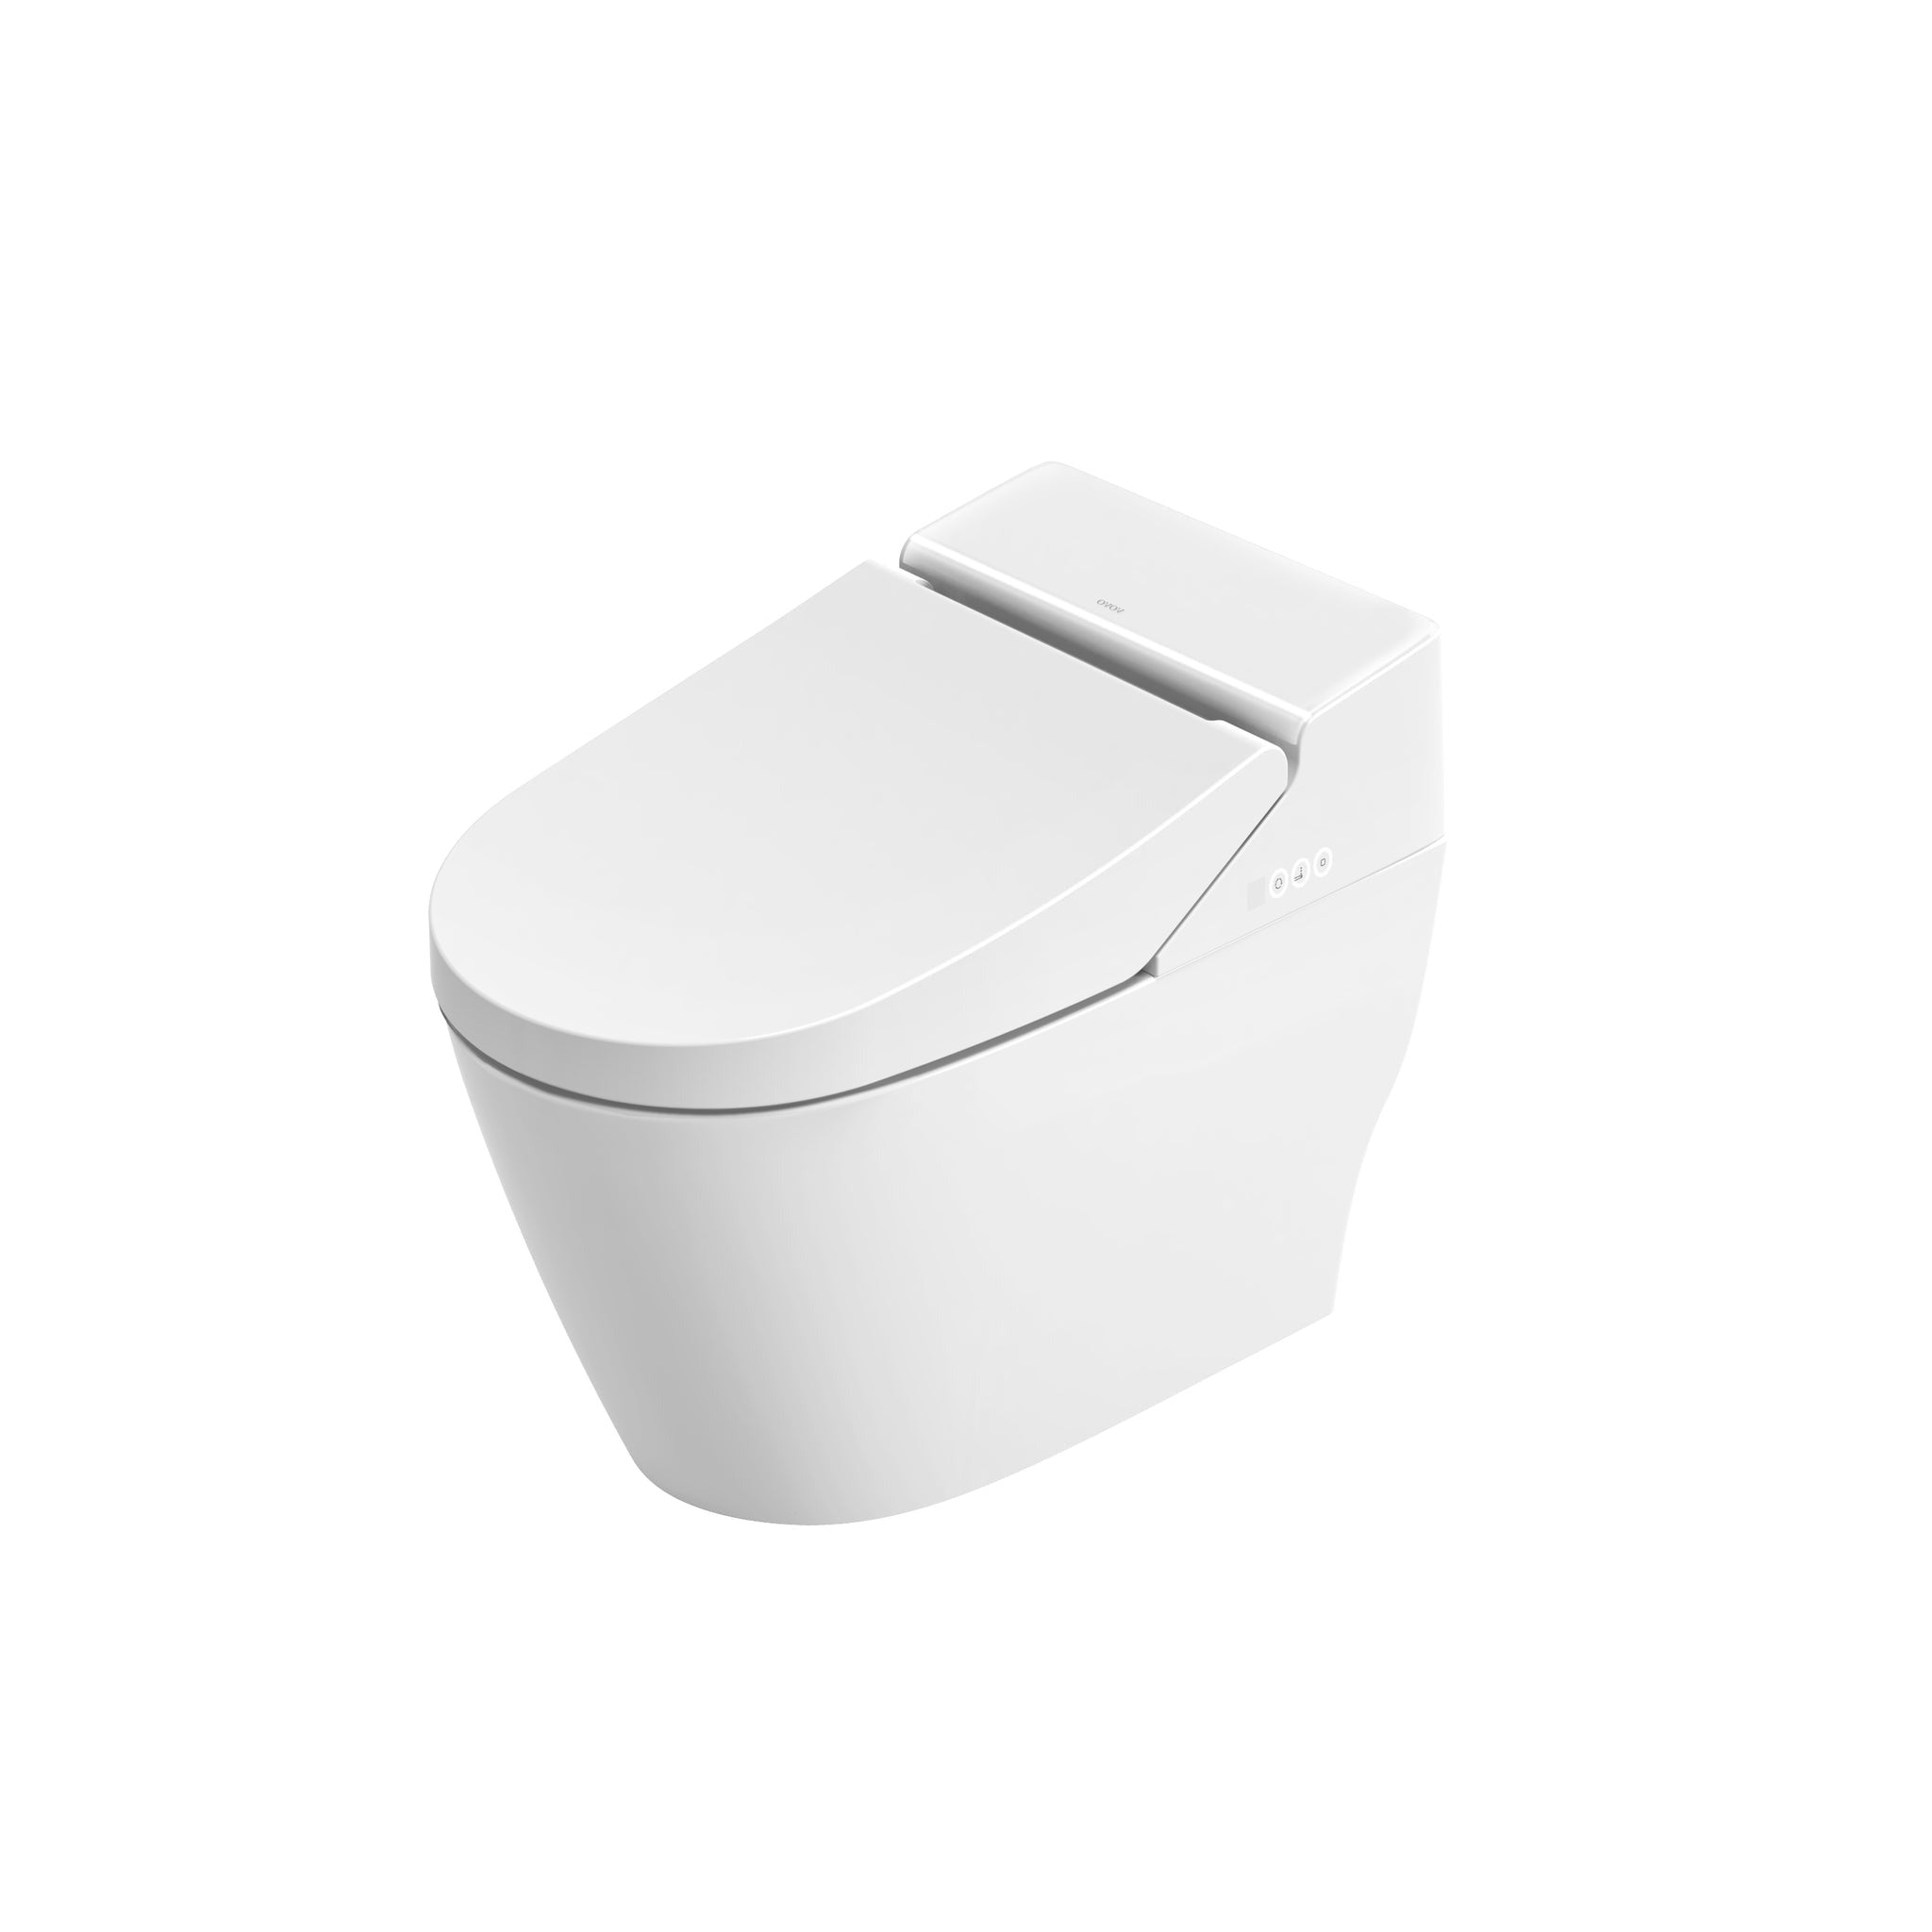 VOVO Toilet one Piece, Auto open and close, auto flush,UV LED Sterilization, Heated Seat